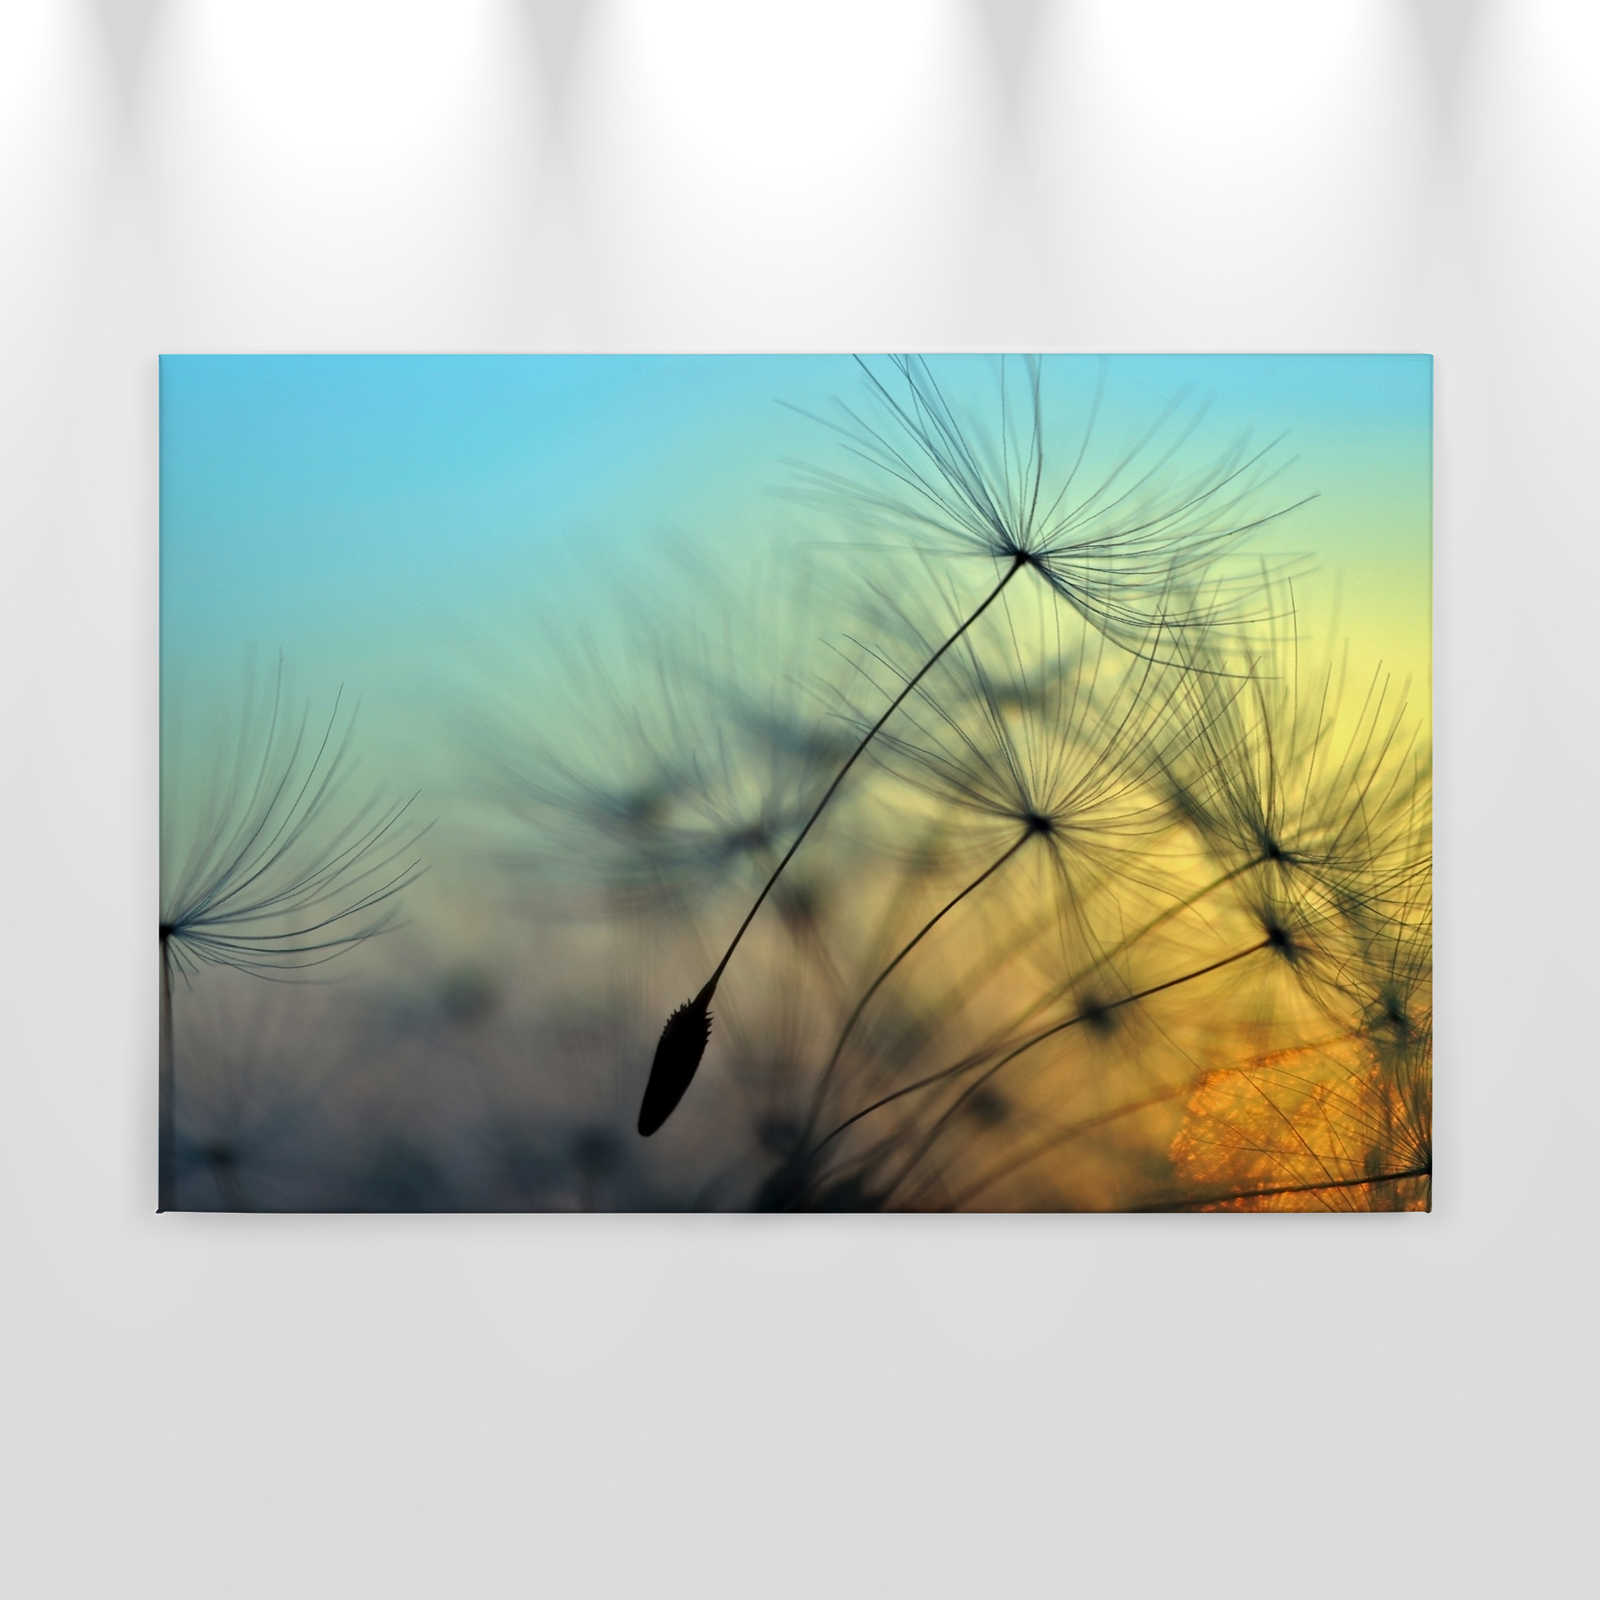             Canvas Dandelion & Sunset - 0.90 m x 0.60 m
        